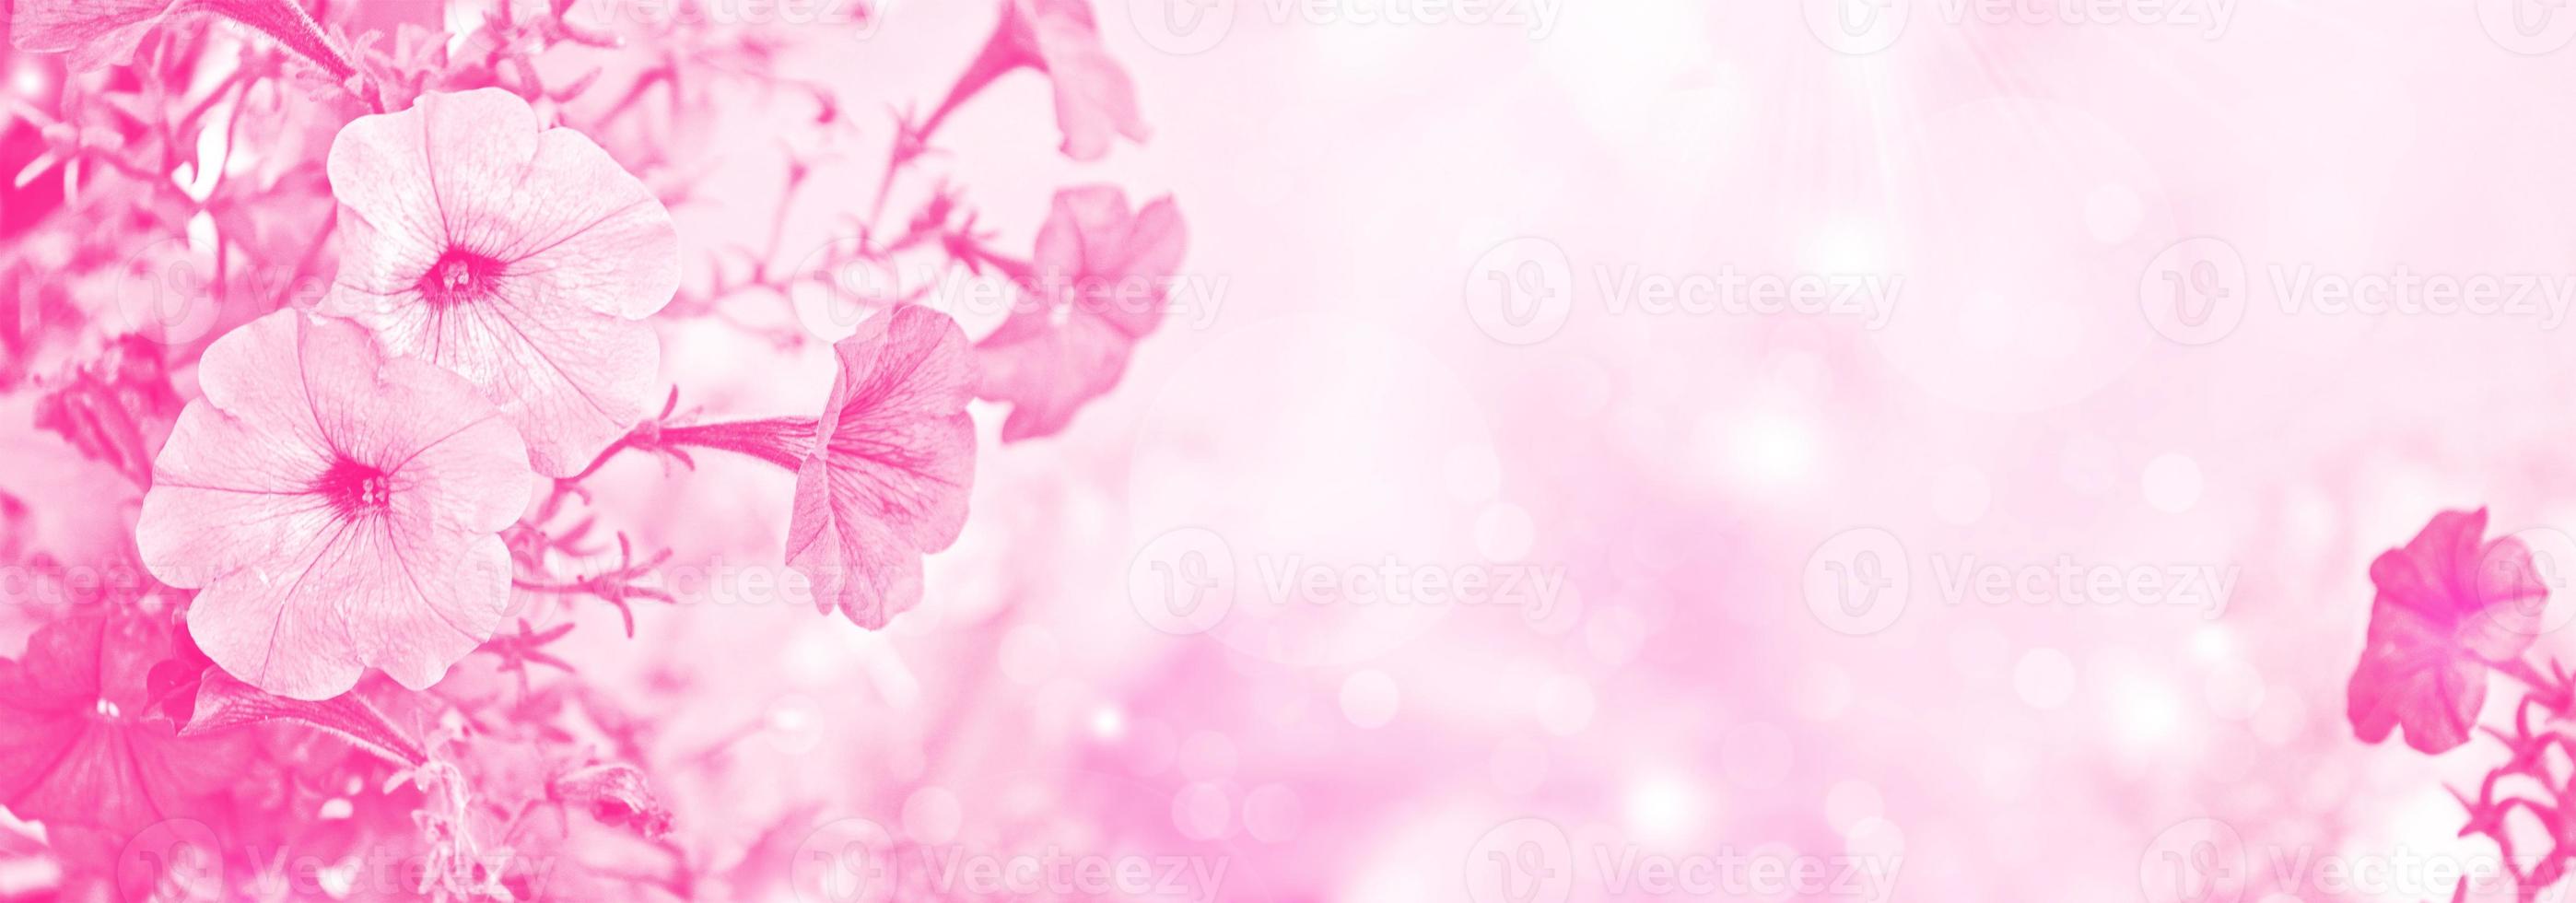 primer plano de una petunia en un macizo de flores, flores rosas, fondo floral. foto